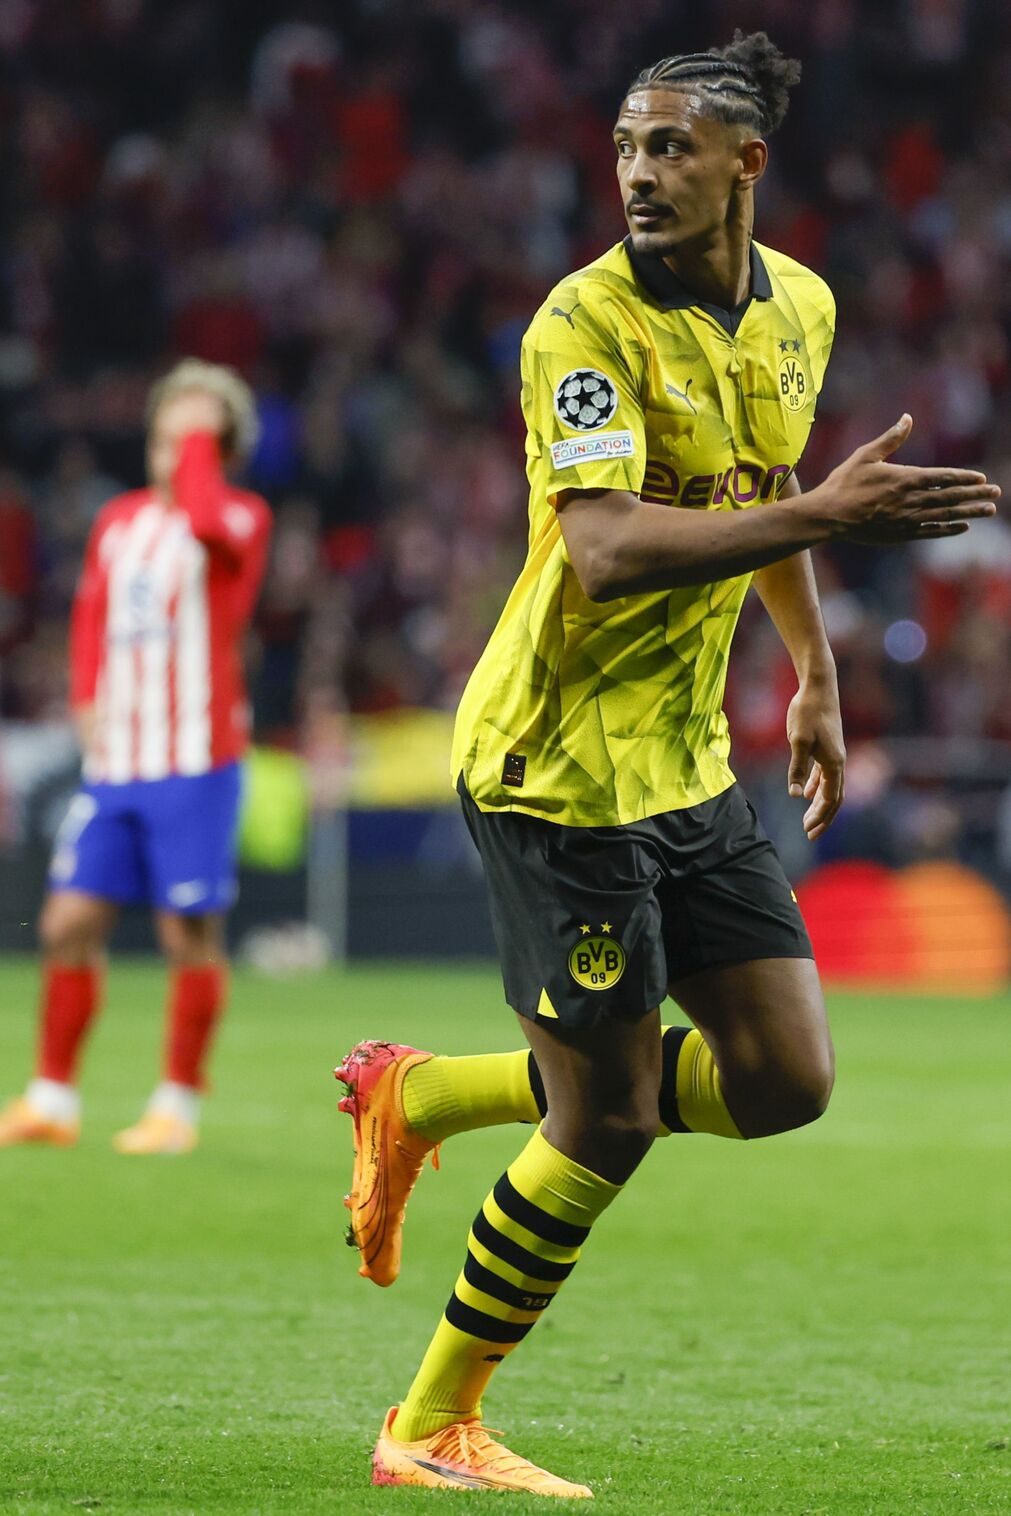 El Atl&eacute;tico de Madrid - Borussia Dortmund, en fotos